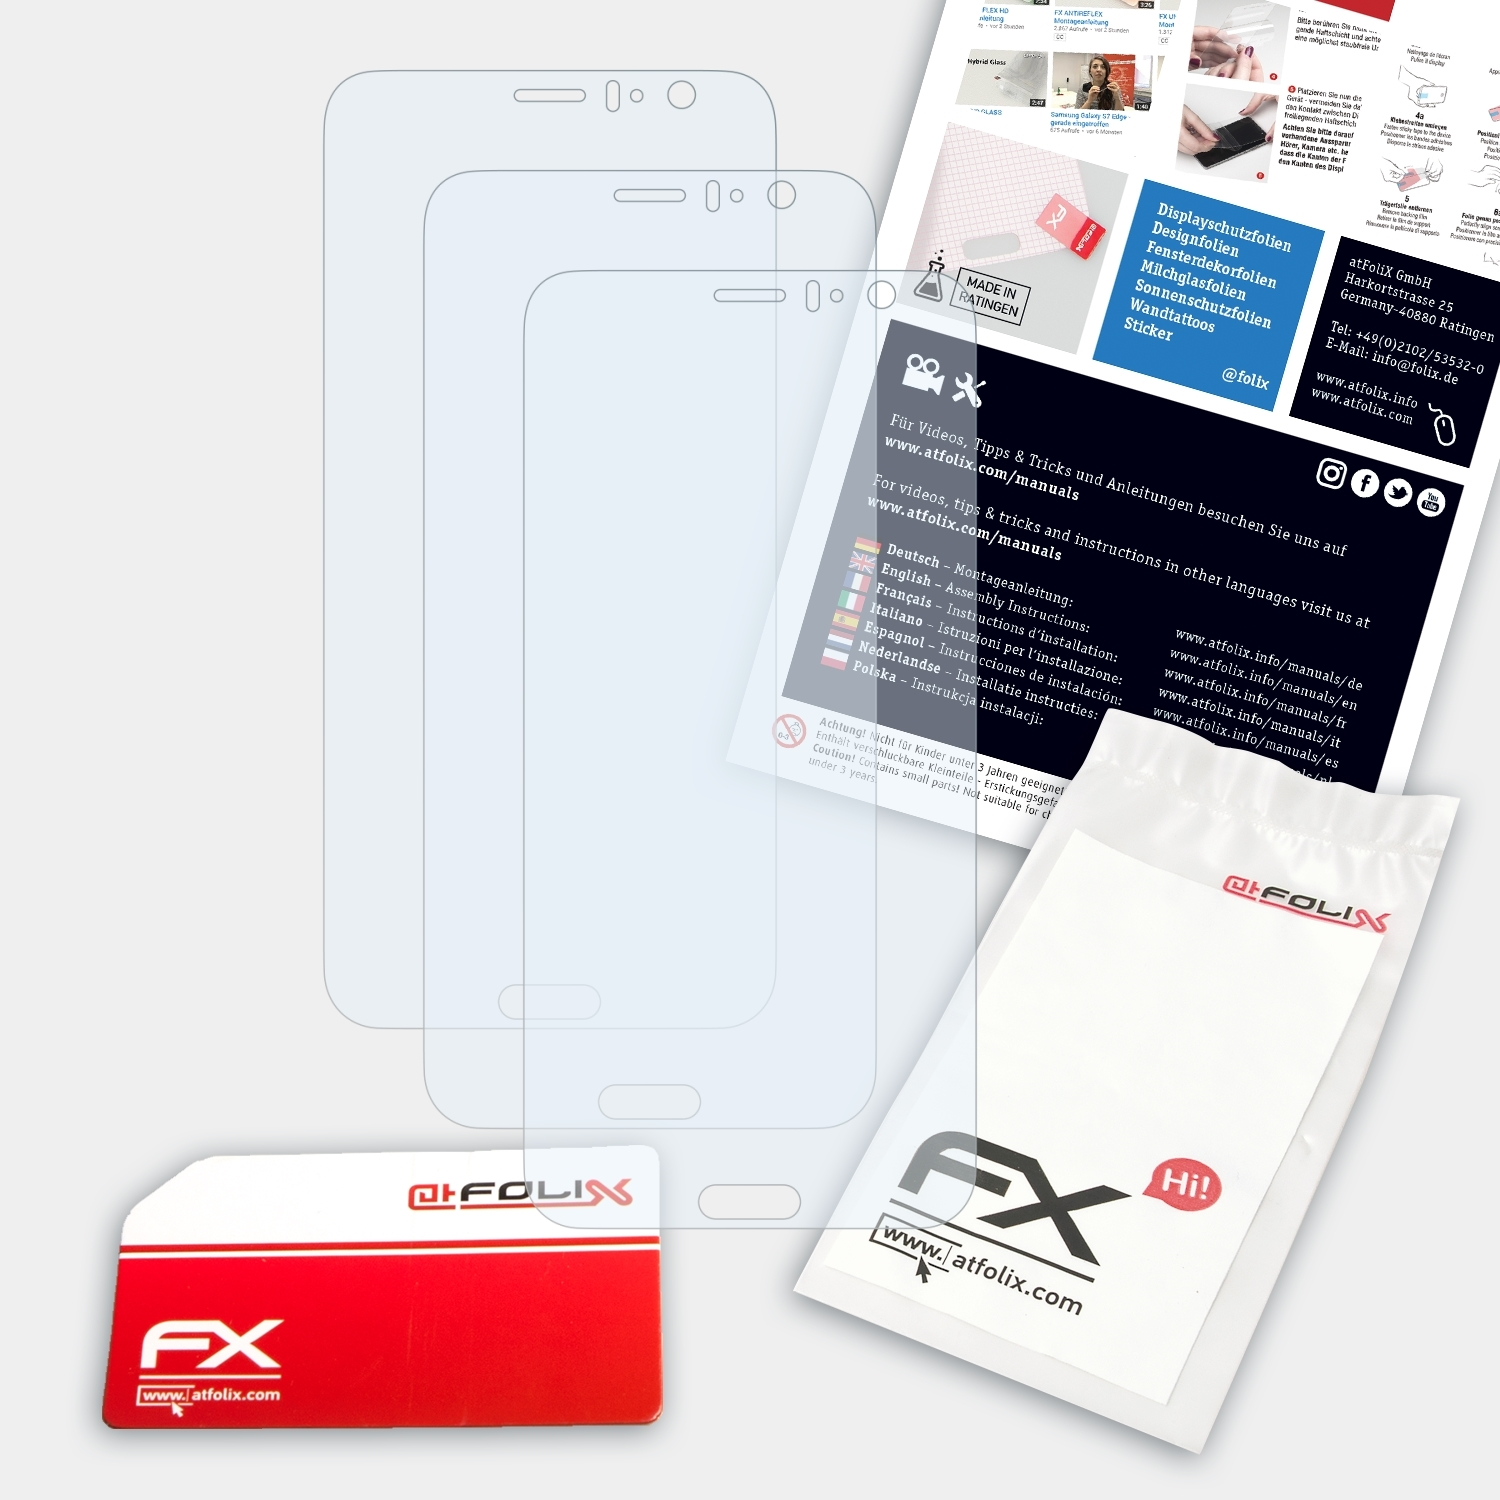 3x FX-Clear HTC Displayschutz(für ATFOLIX U11)